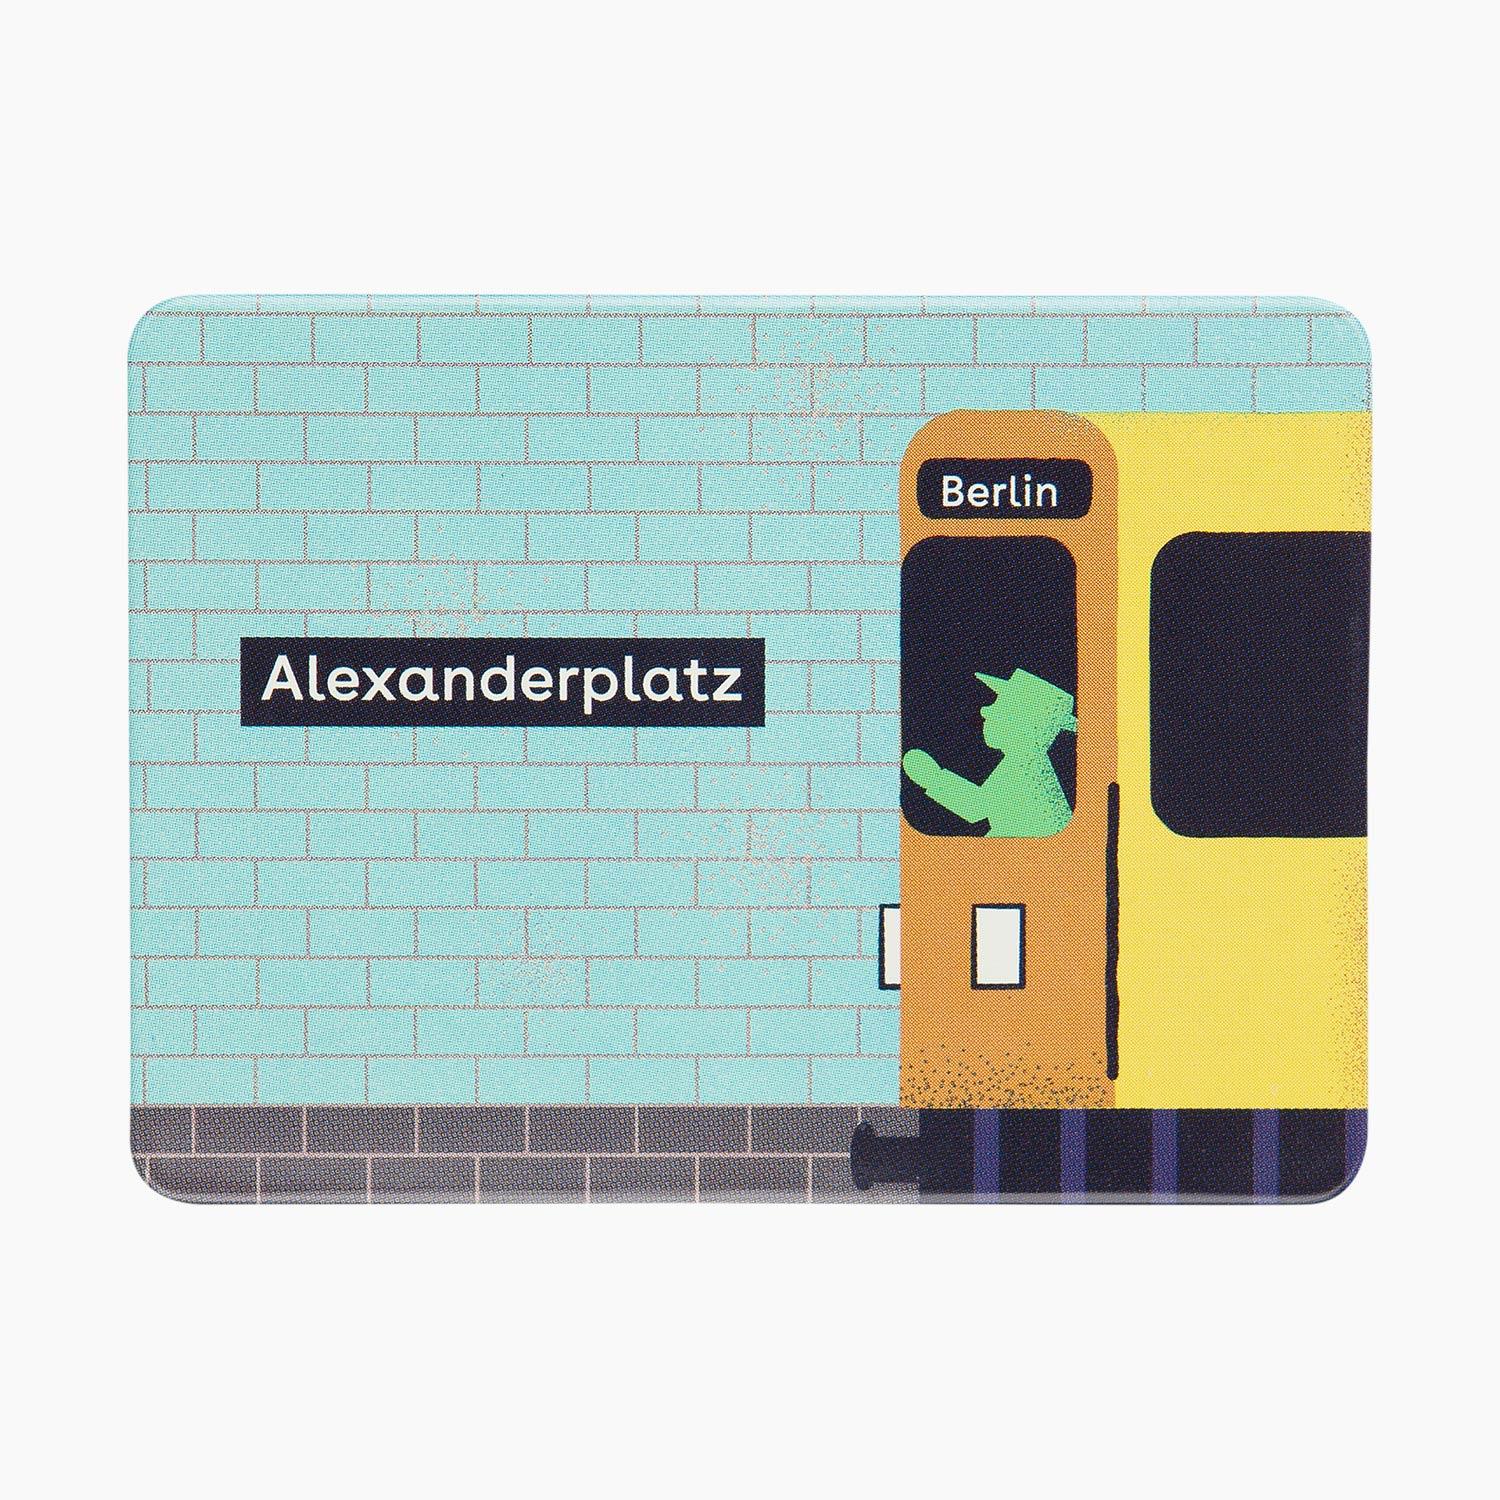 ANHALTER U-Bahn/ Magnet